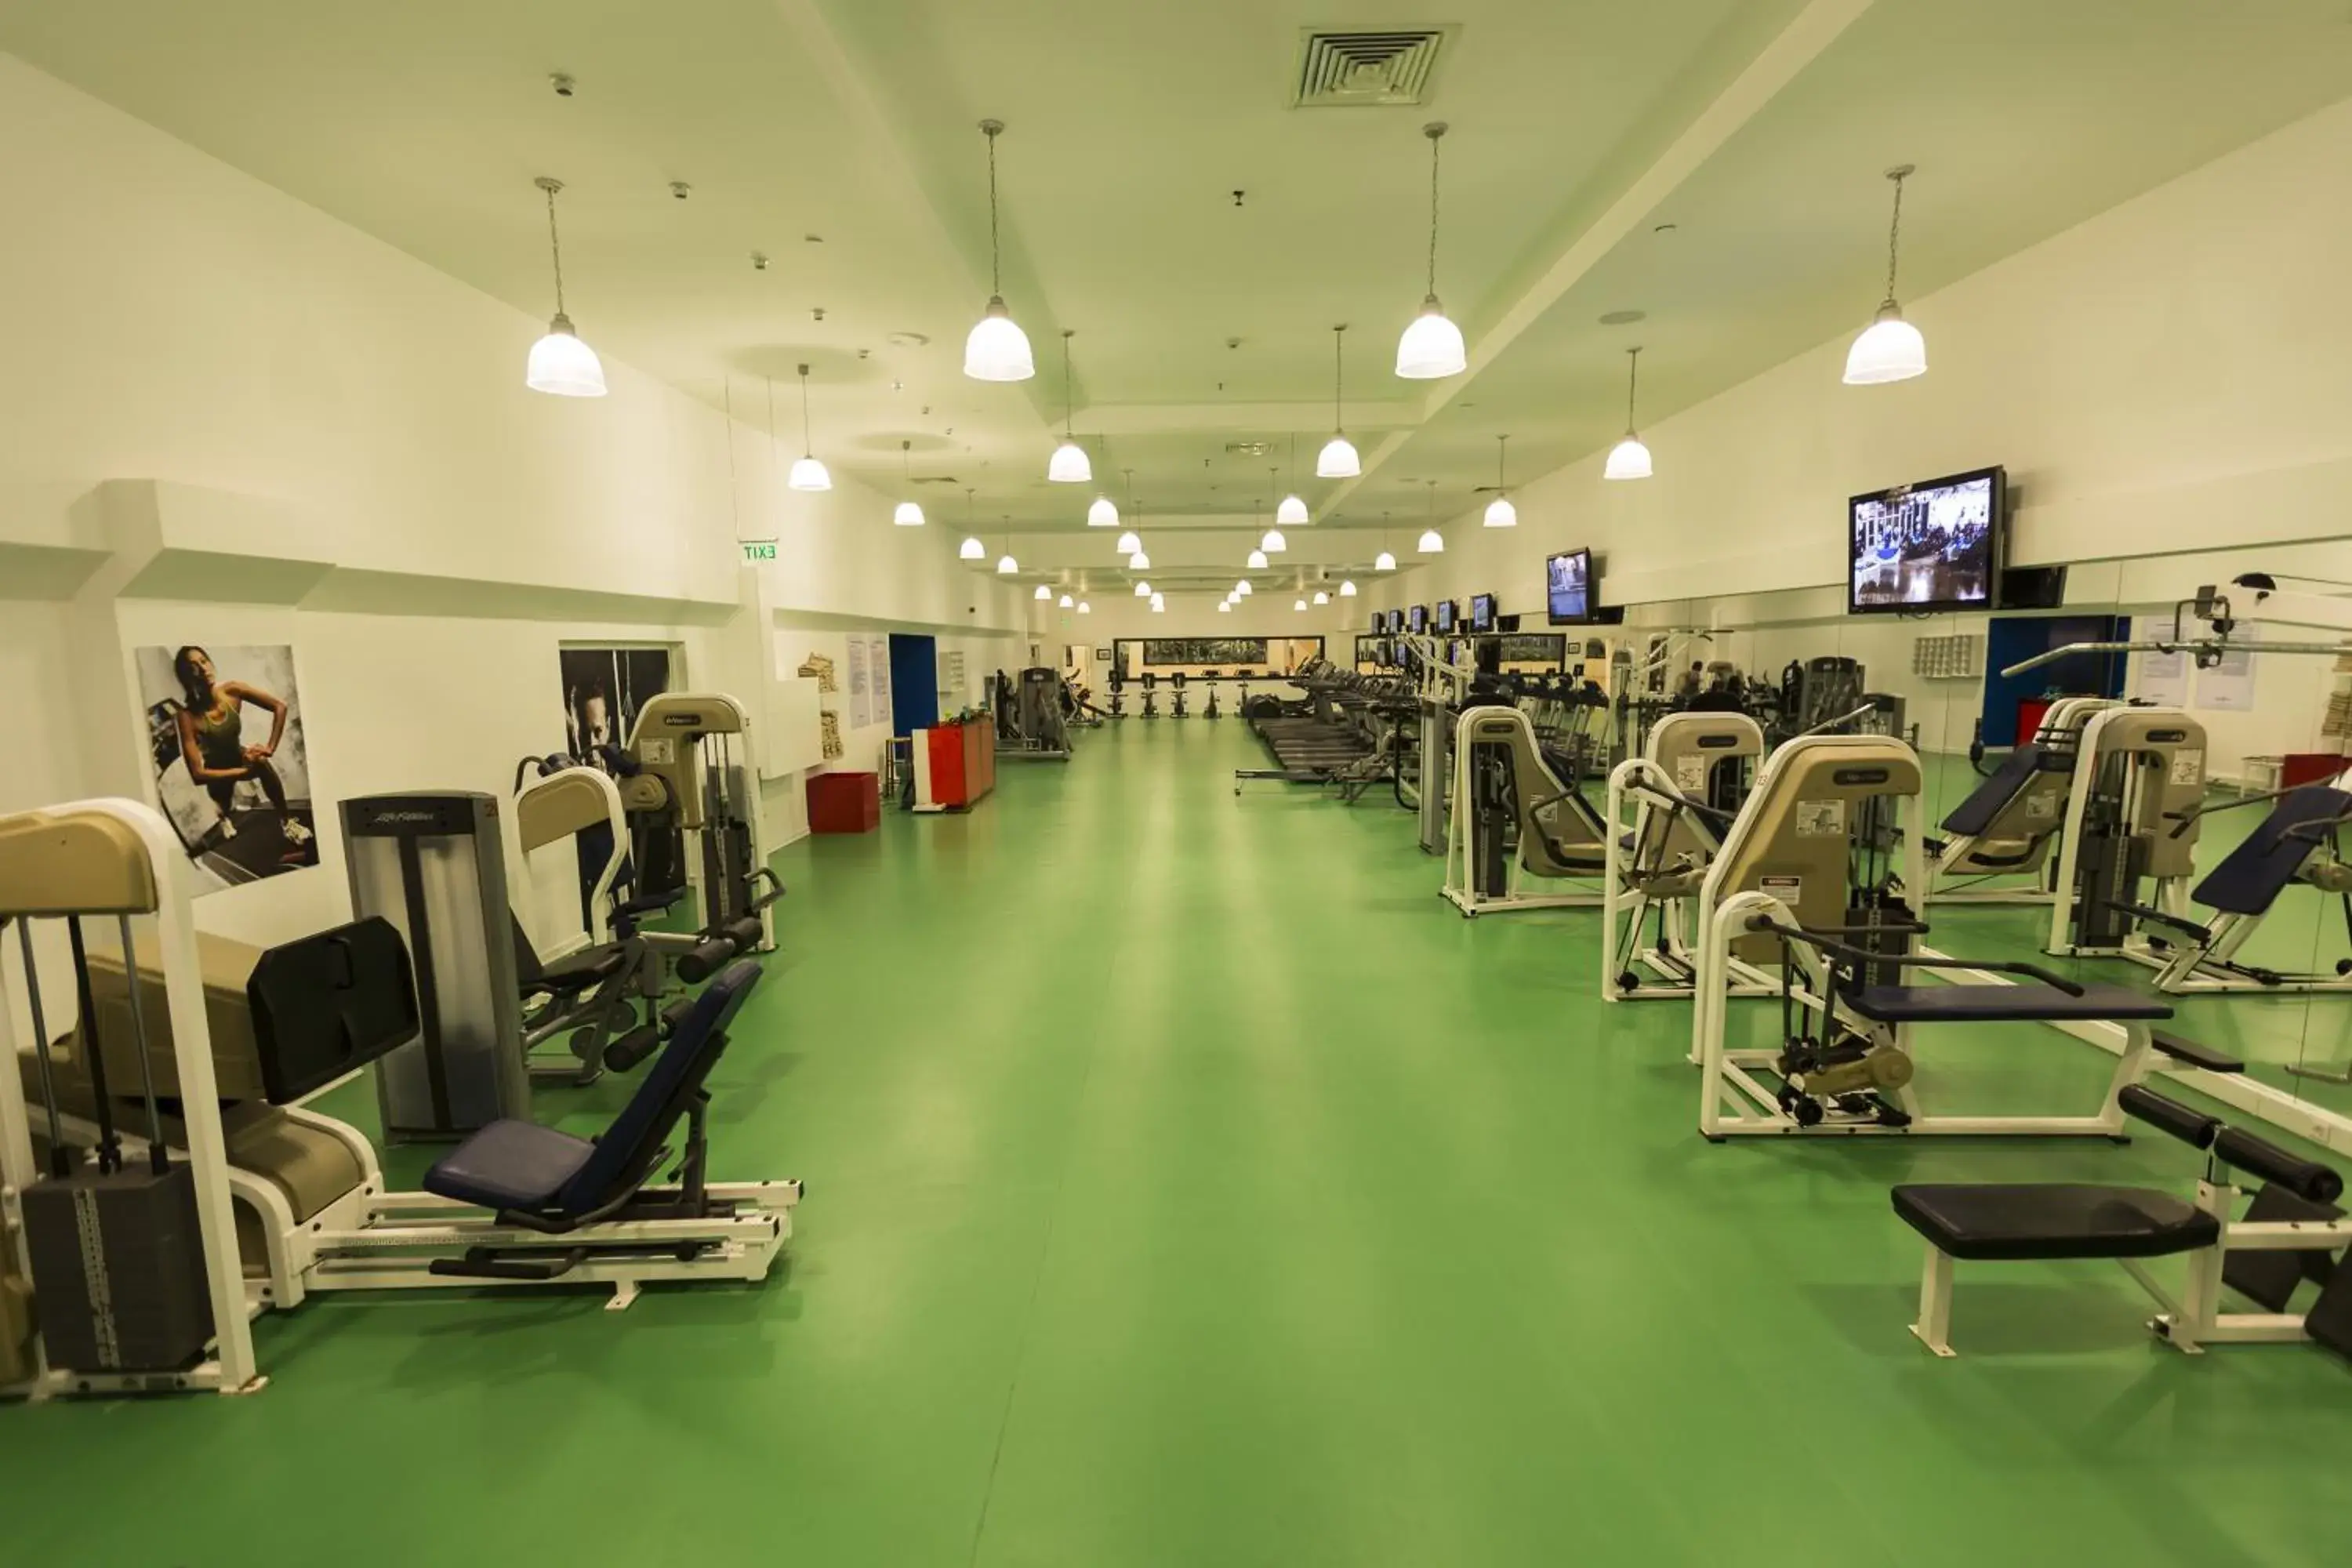 Fitness centre/facilities, Fitness Center/Facilities in The Marmara Antalya